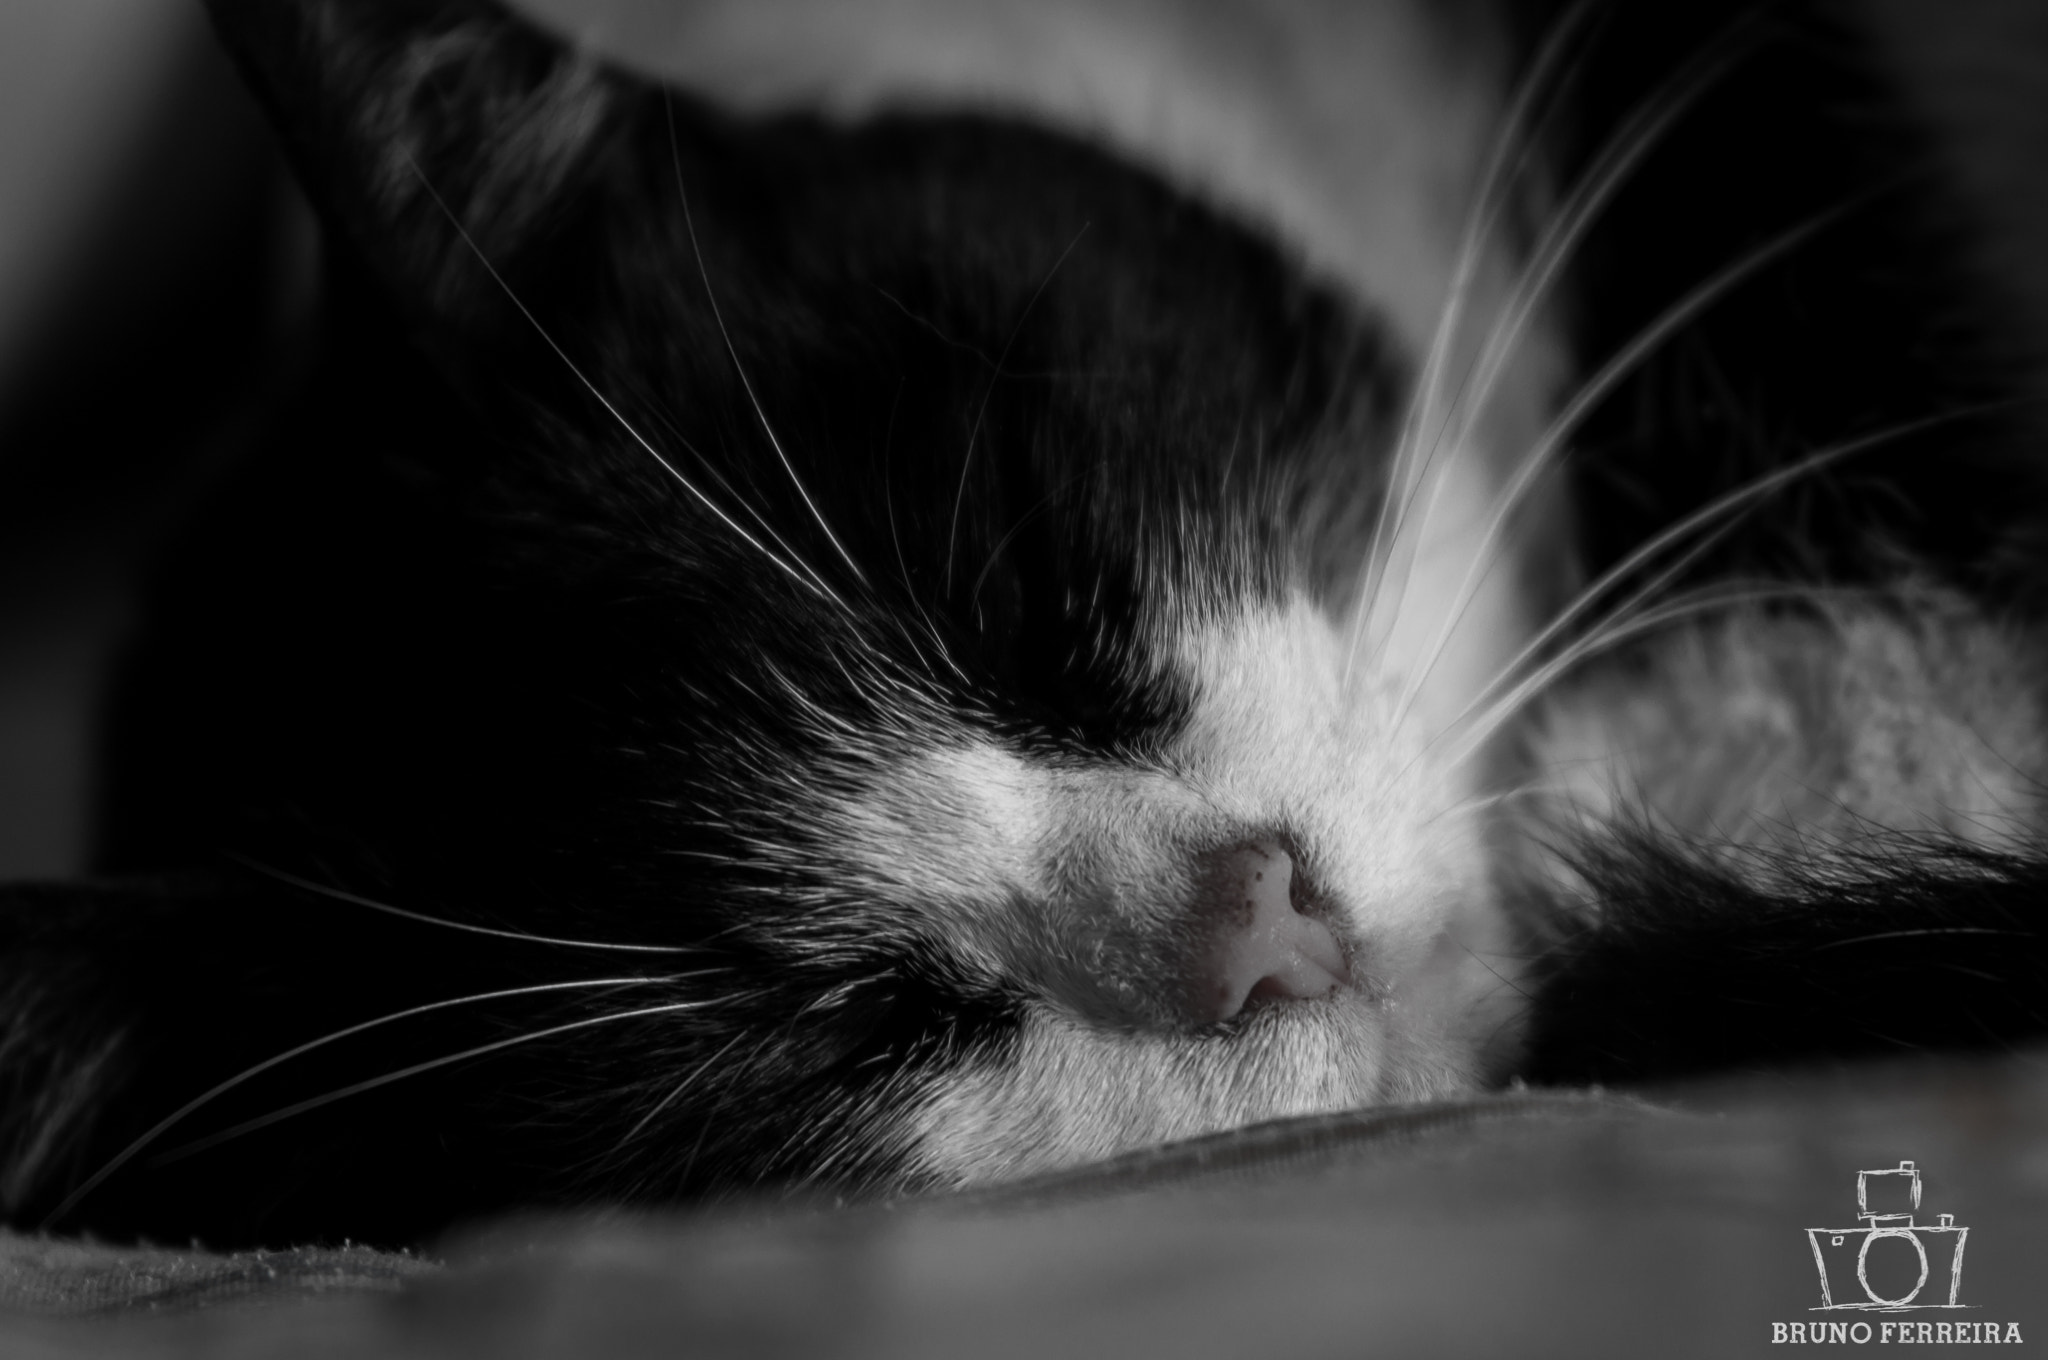 Nikon D90 + Tamron SP AF 70-200mm F2.8 Di LD (IF) MACRO sample photo. Cat sleeping photography